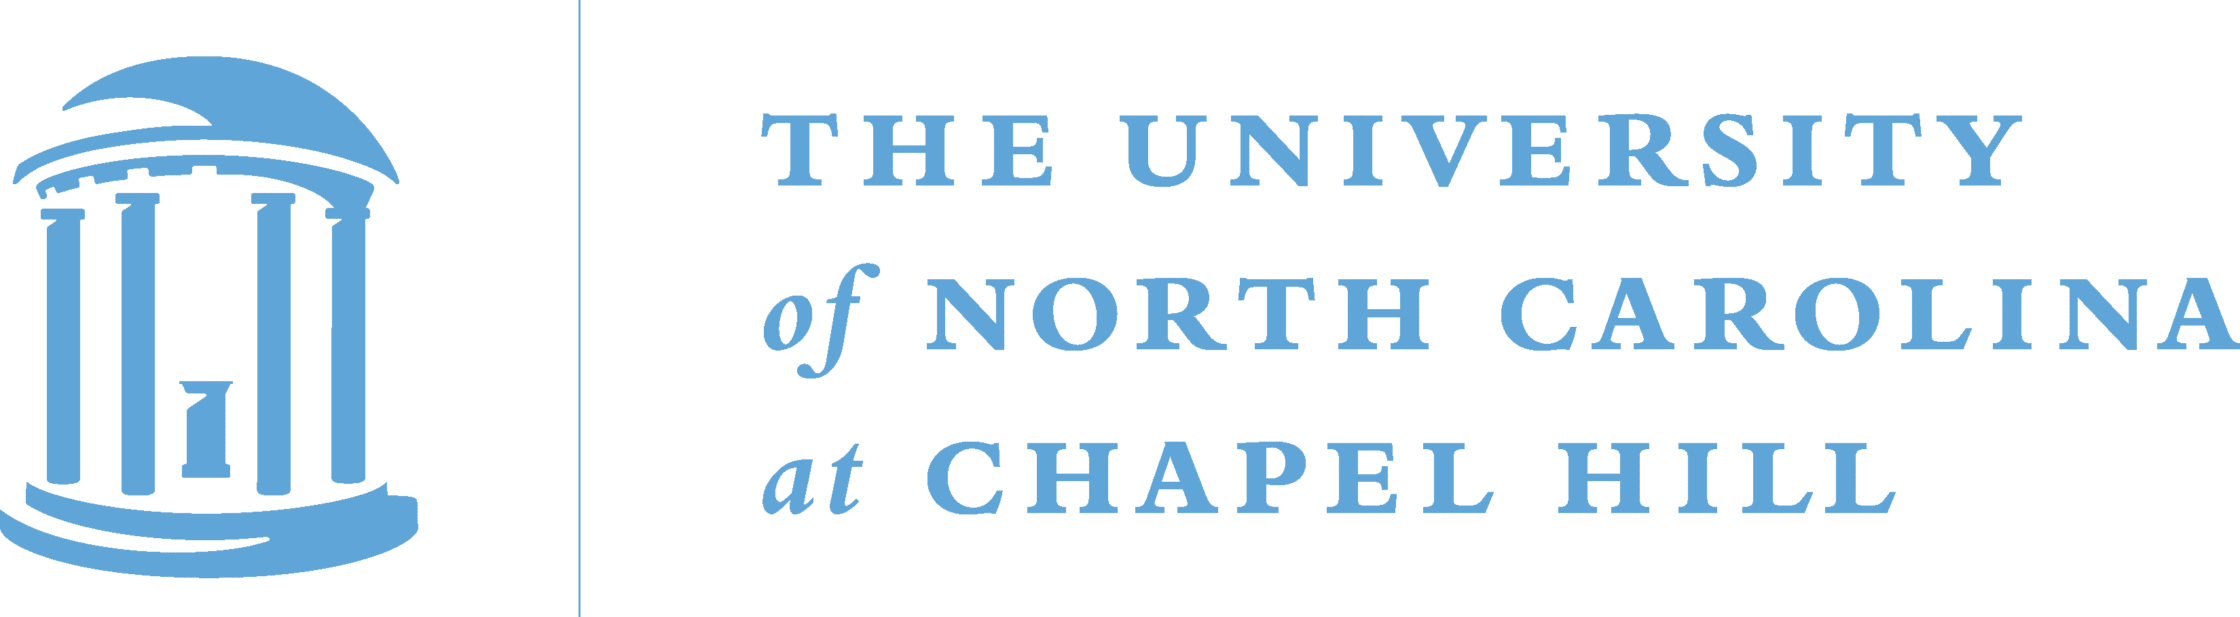 UNC Chapel HIll logo-s